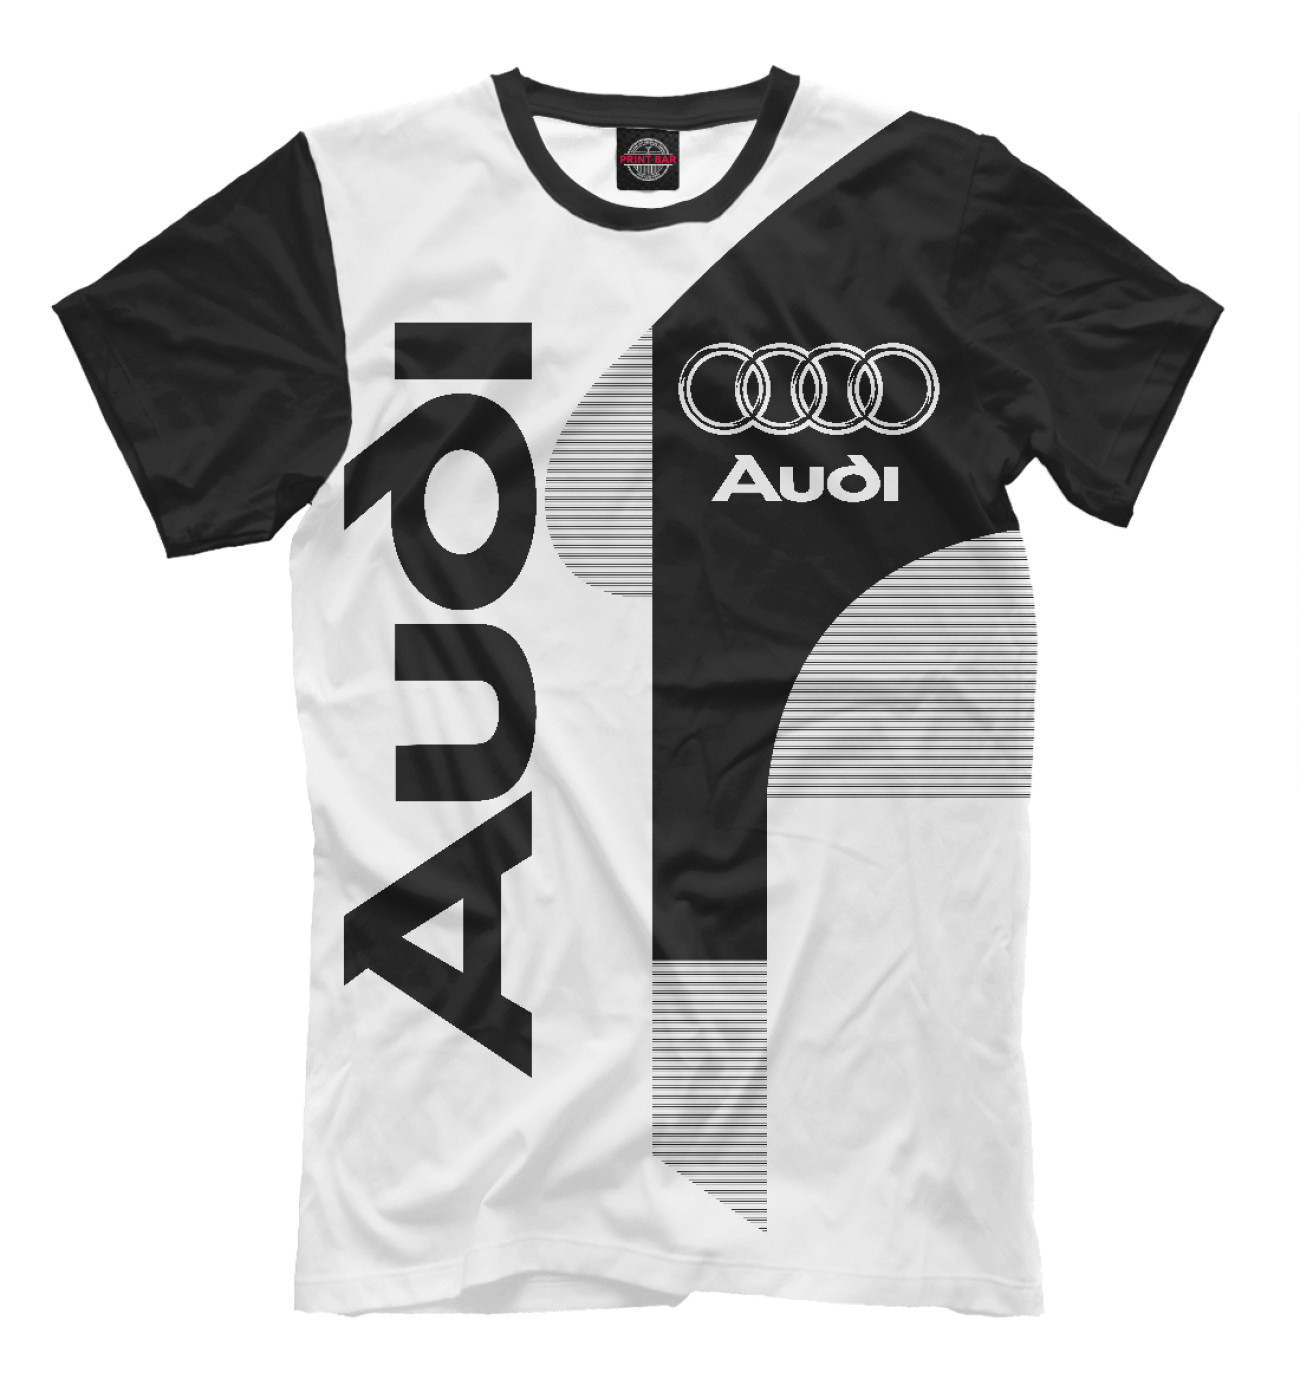 Мужская Футболка Audi, артикул: AUD-309816-fut-2